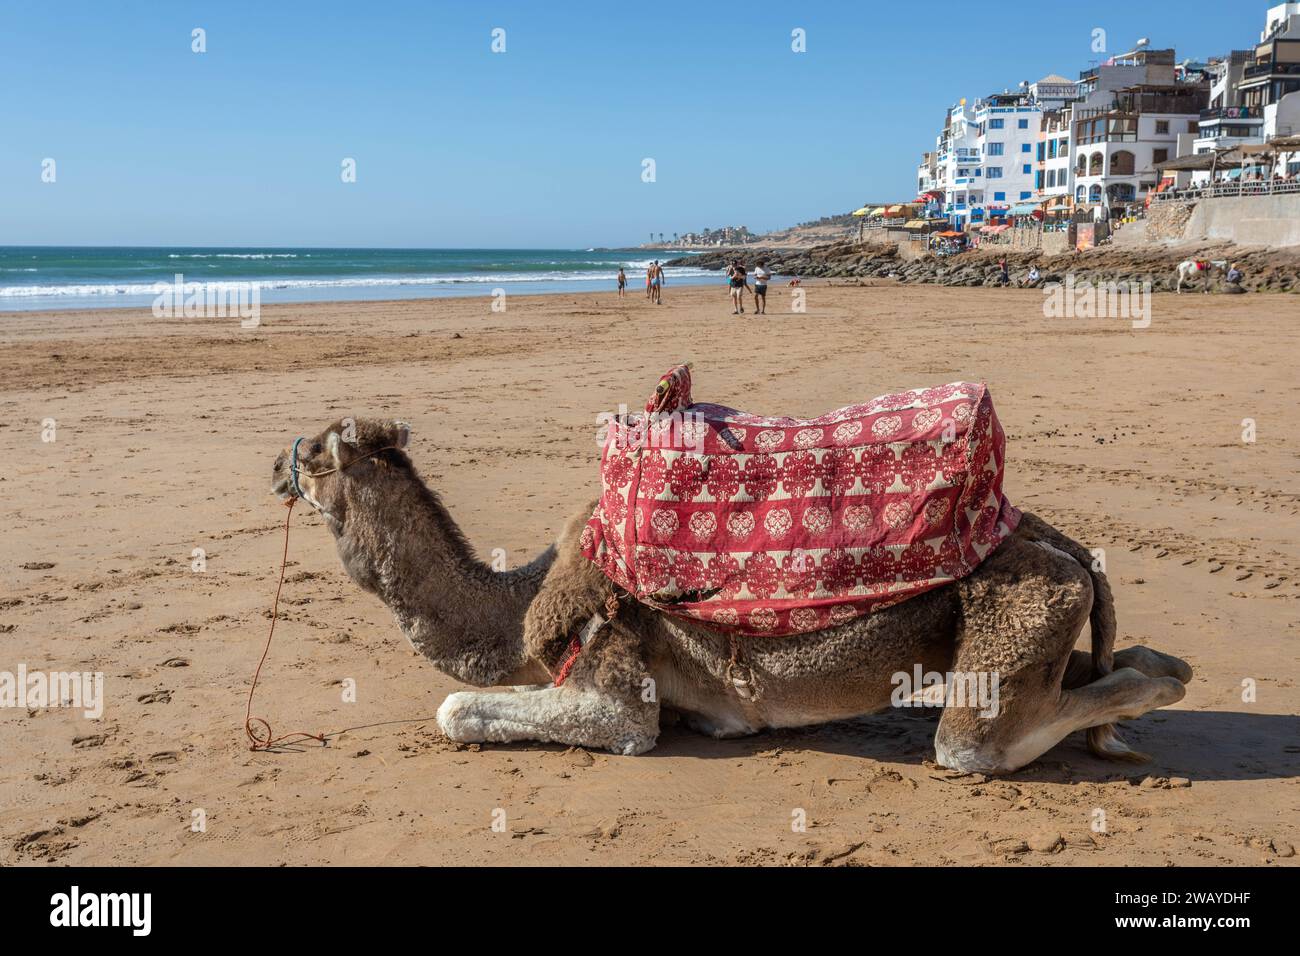 Ein Kamel am Strand mit dem Atlantischen Ozean und Strandgebäuden im Hintergrund, Taghazout, Marokko Stockfoto